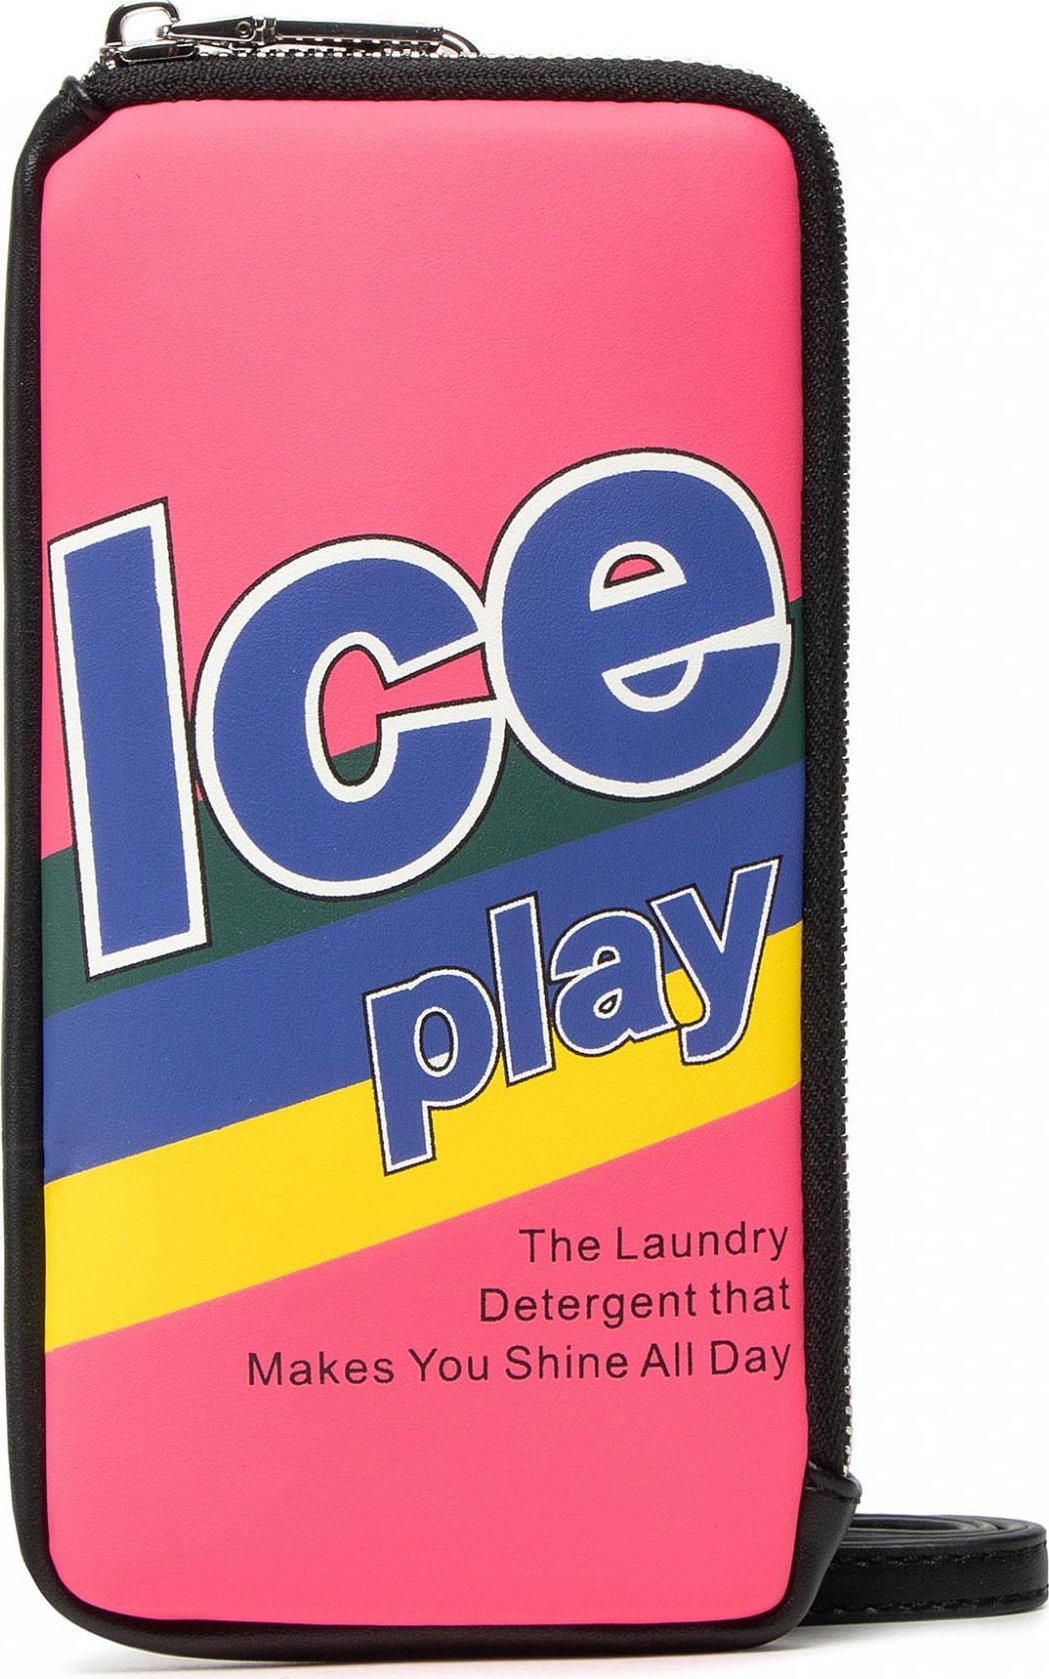 Pouzdro na mobil Ice Play 21I W2M1 7301 6930 S4Y1